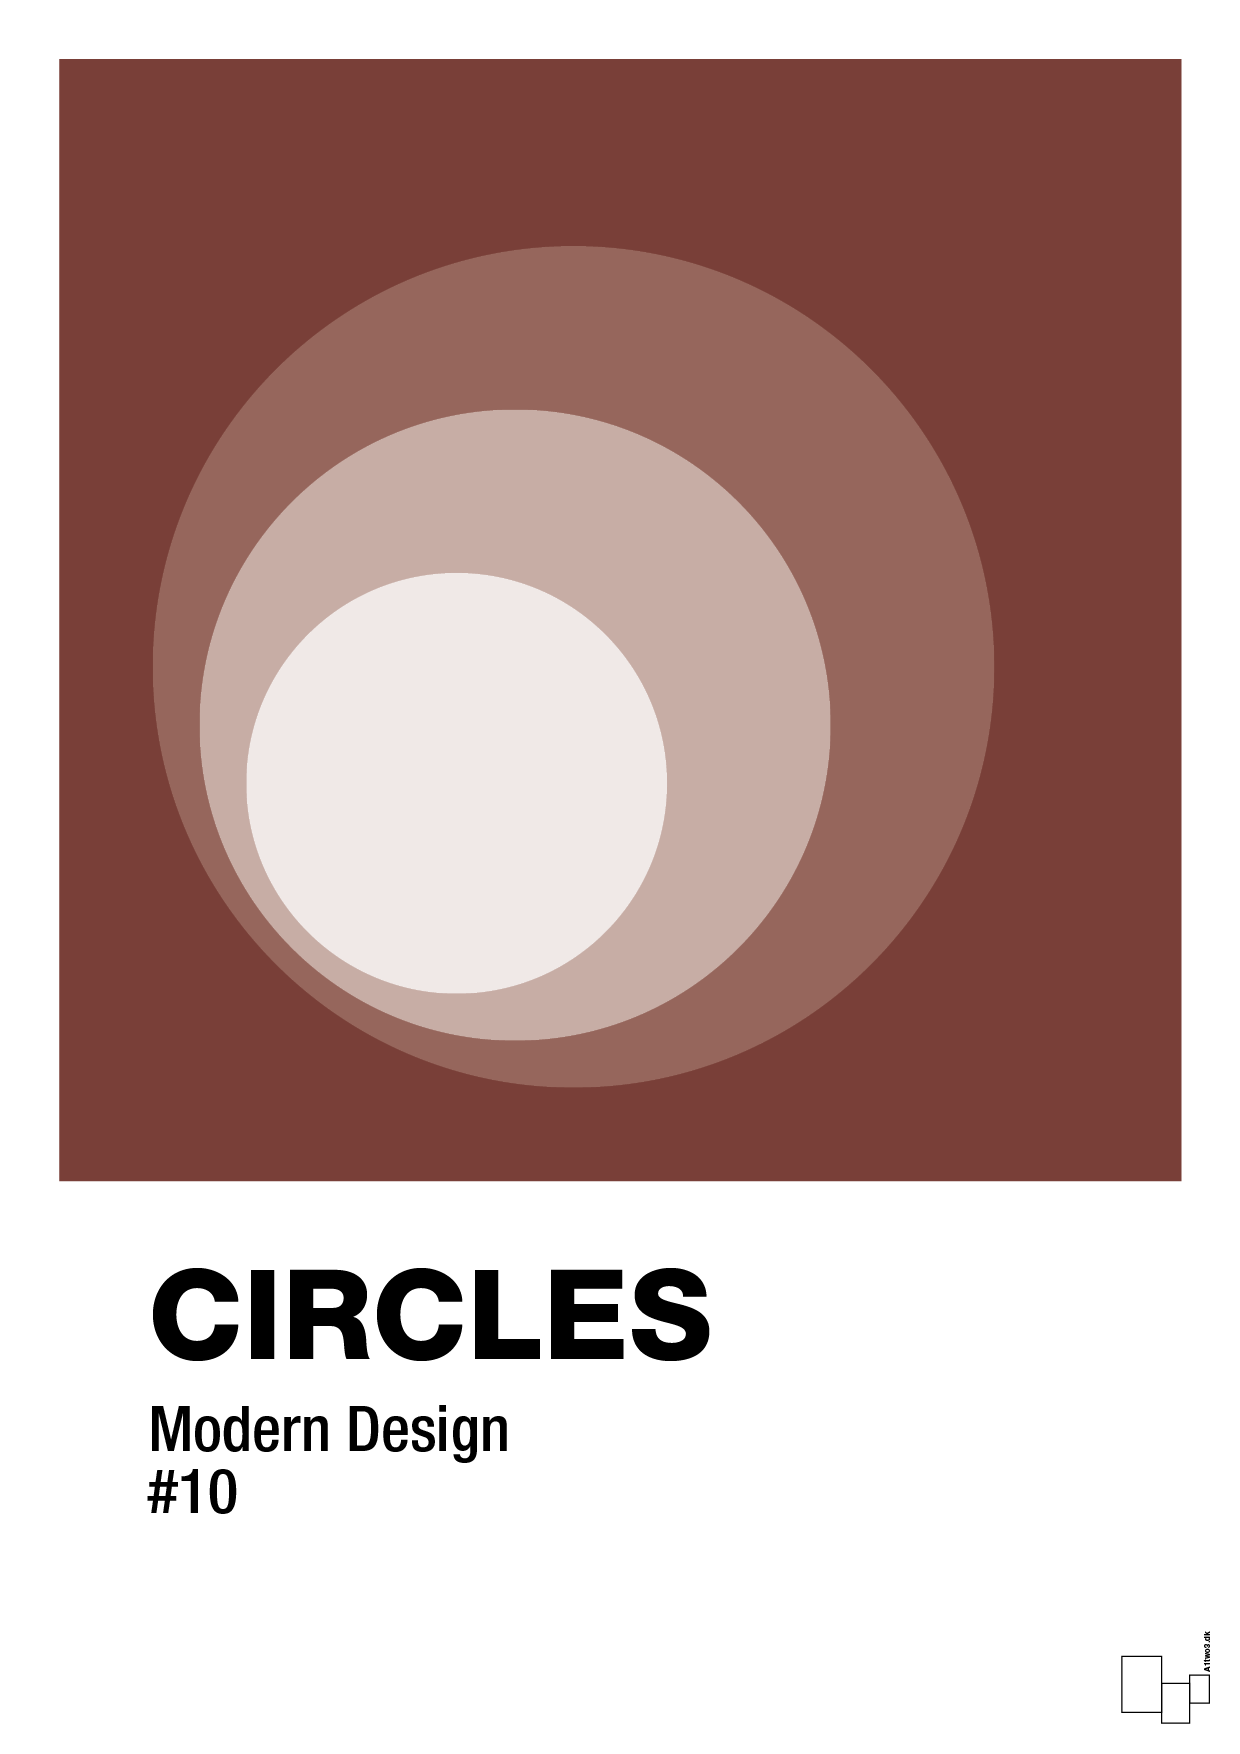 circles #10 - Plakat med Grafik i Red Pepper